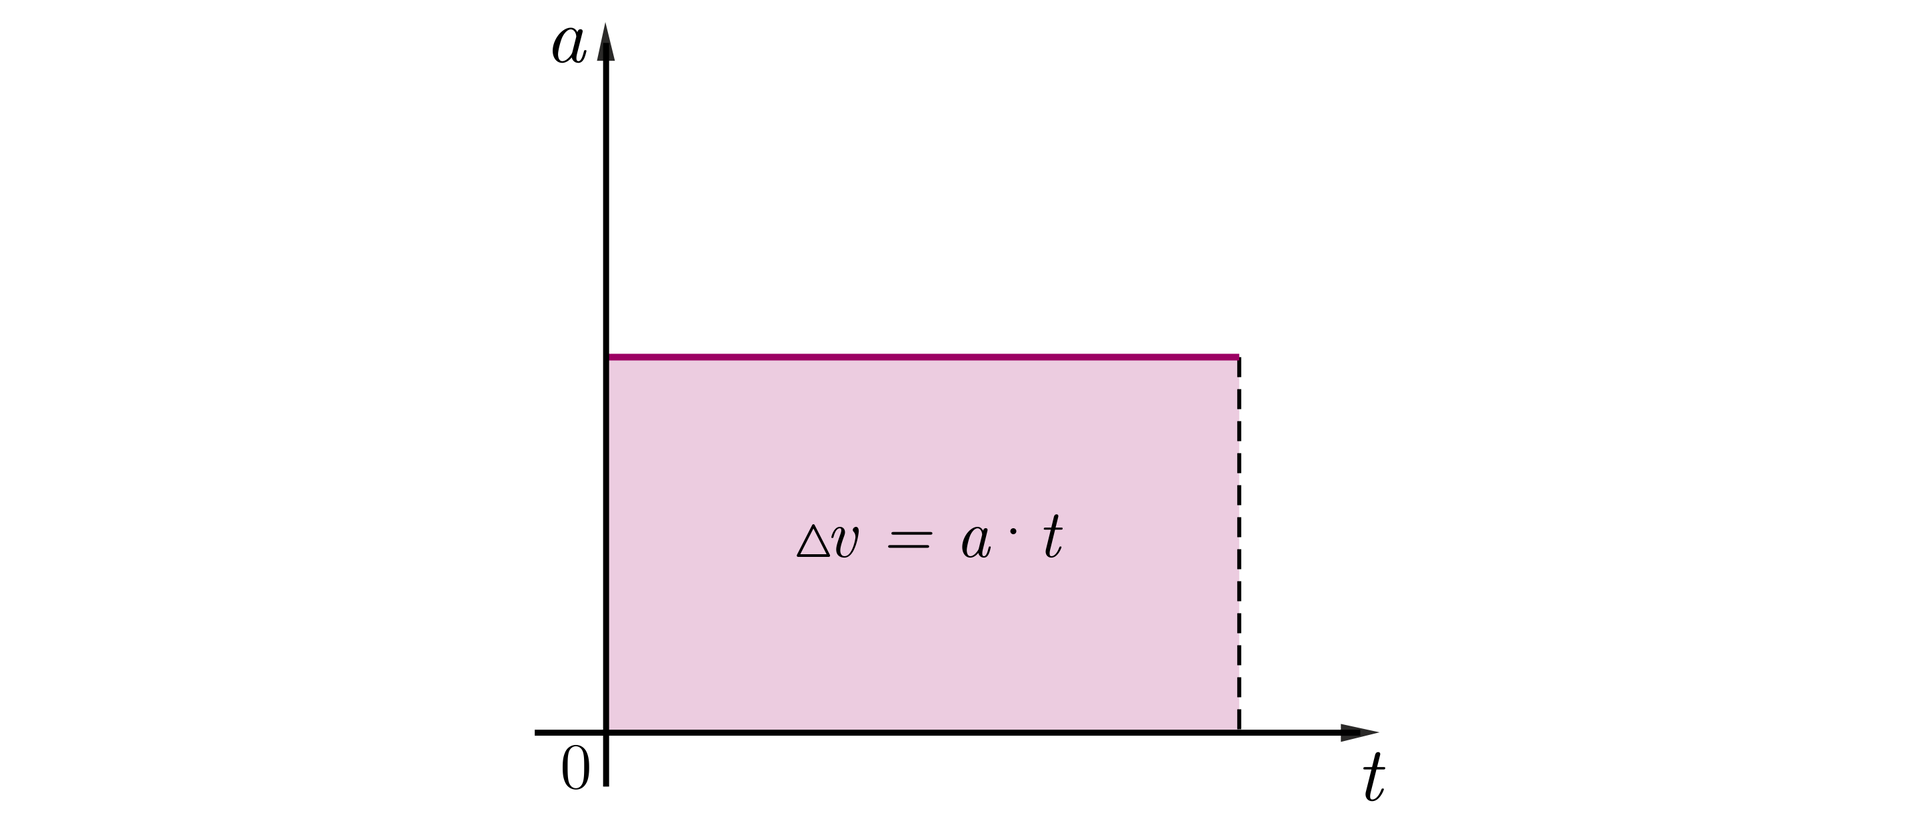 Na rysunku znajduje się układ współrzędnych, oś pozioma oznaczona jako t, oś pionowa jako a. Na pewnej wysokości zaznaczono różowy poziomy odcinek o pewnej długości. Lewy koniec odcinka znajduje się na pionowej osi a. Jest to wykres przyspieszenia od czasu i odcinek ten pokrywa się z prostą będącą wykresem funkcji a od t. Z prawego końca tego odcinka opuszczony jest pionowy odcinek narysowany przerywaną linią. Dolny koniec tego odcinka znajduje się na poziomej osi poziomej. Obszar wyznaczony przez te dwa odcinki oraz osie pionową i poziomą zamalowany jest na kolor różowy i tworzy prostokąt na środku którego zapisano wzór delta v równa się a razy t.